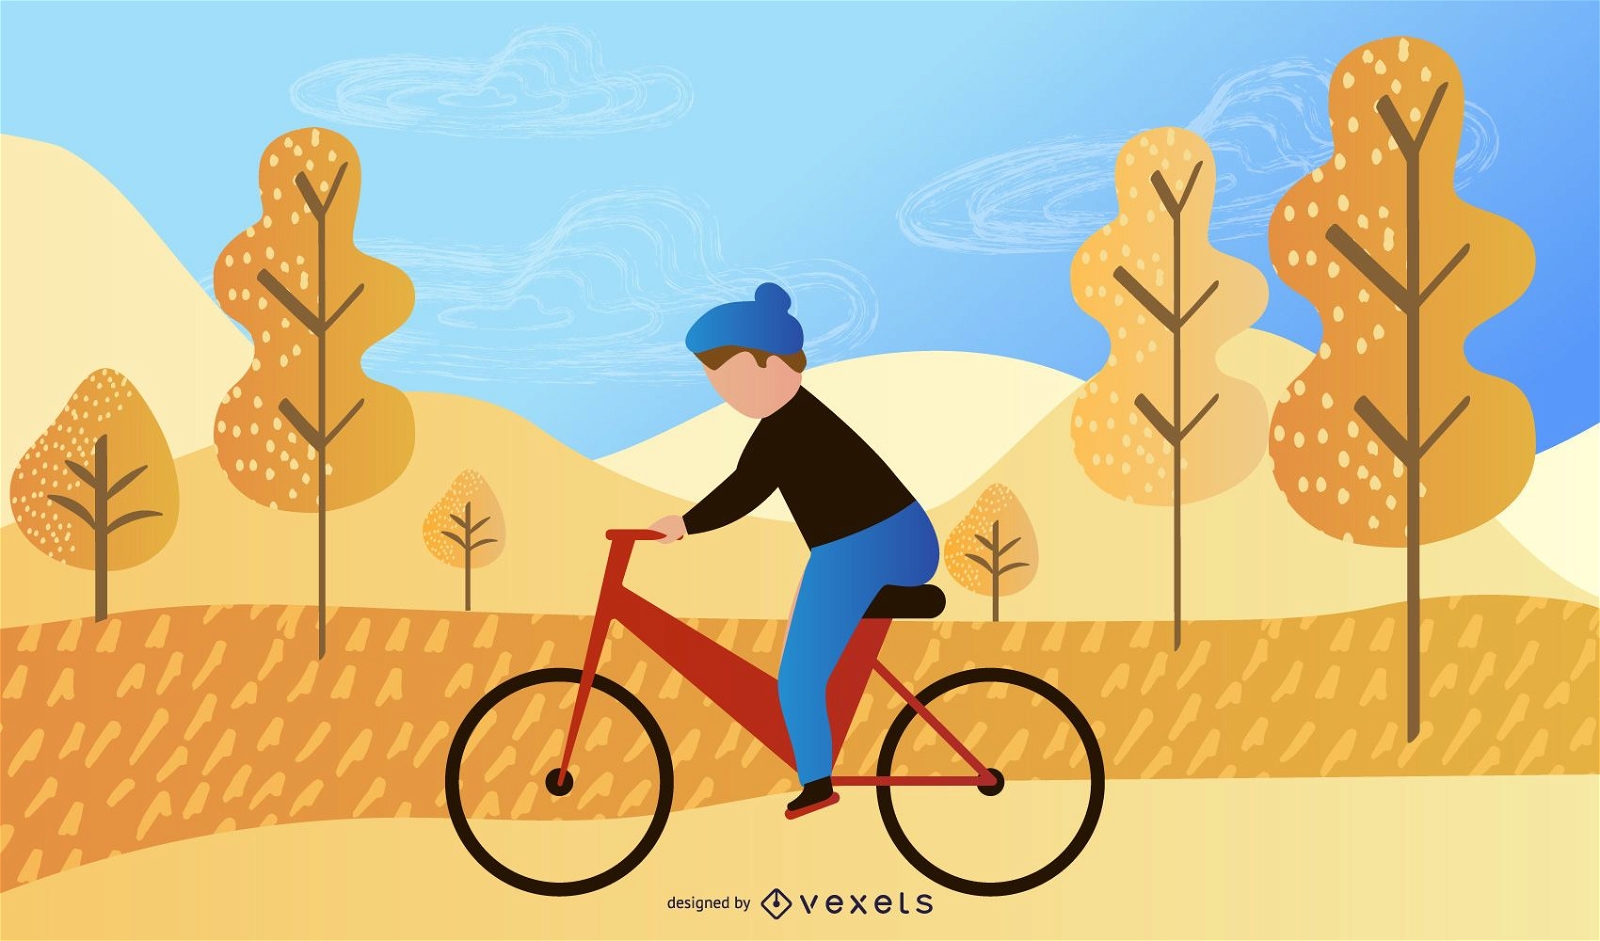 ciclista en la ilustraci?n del parque